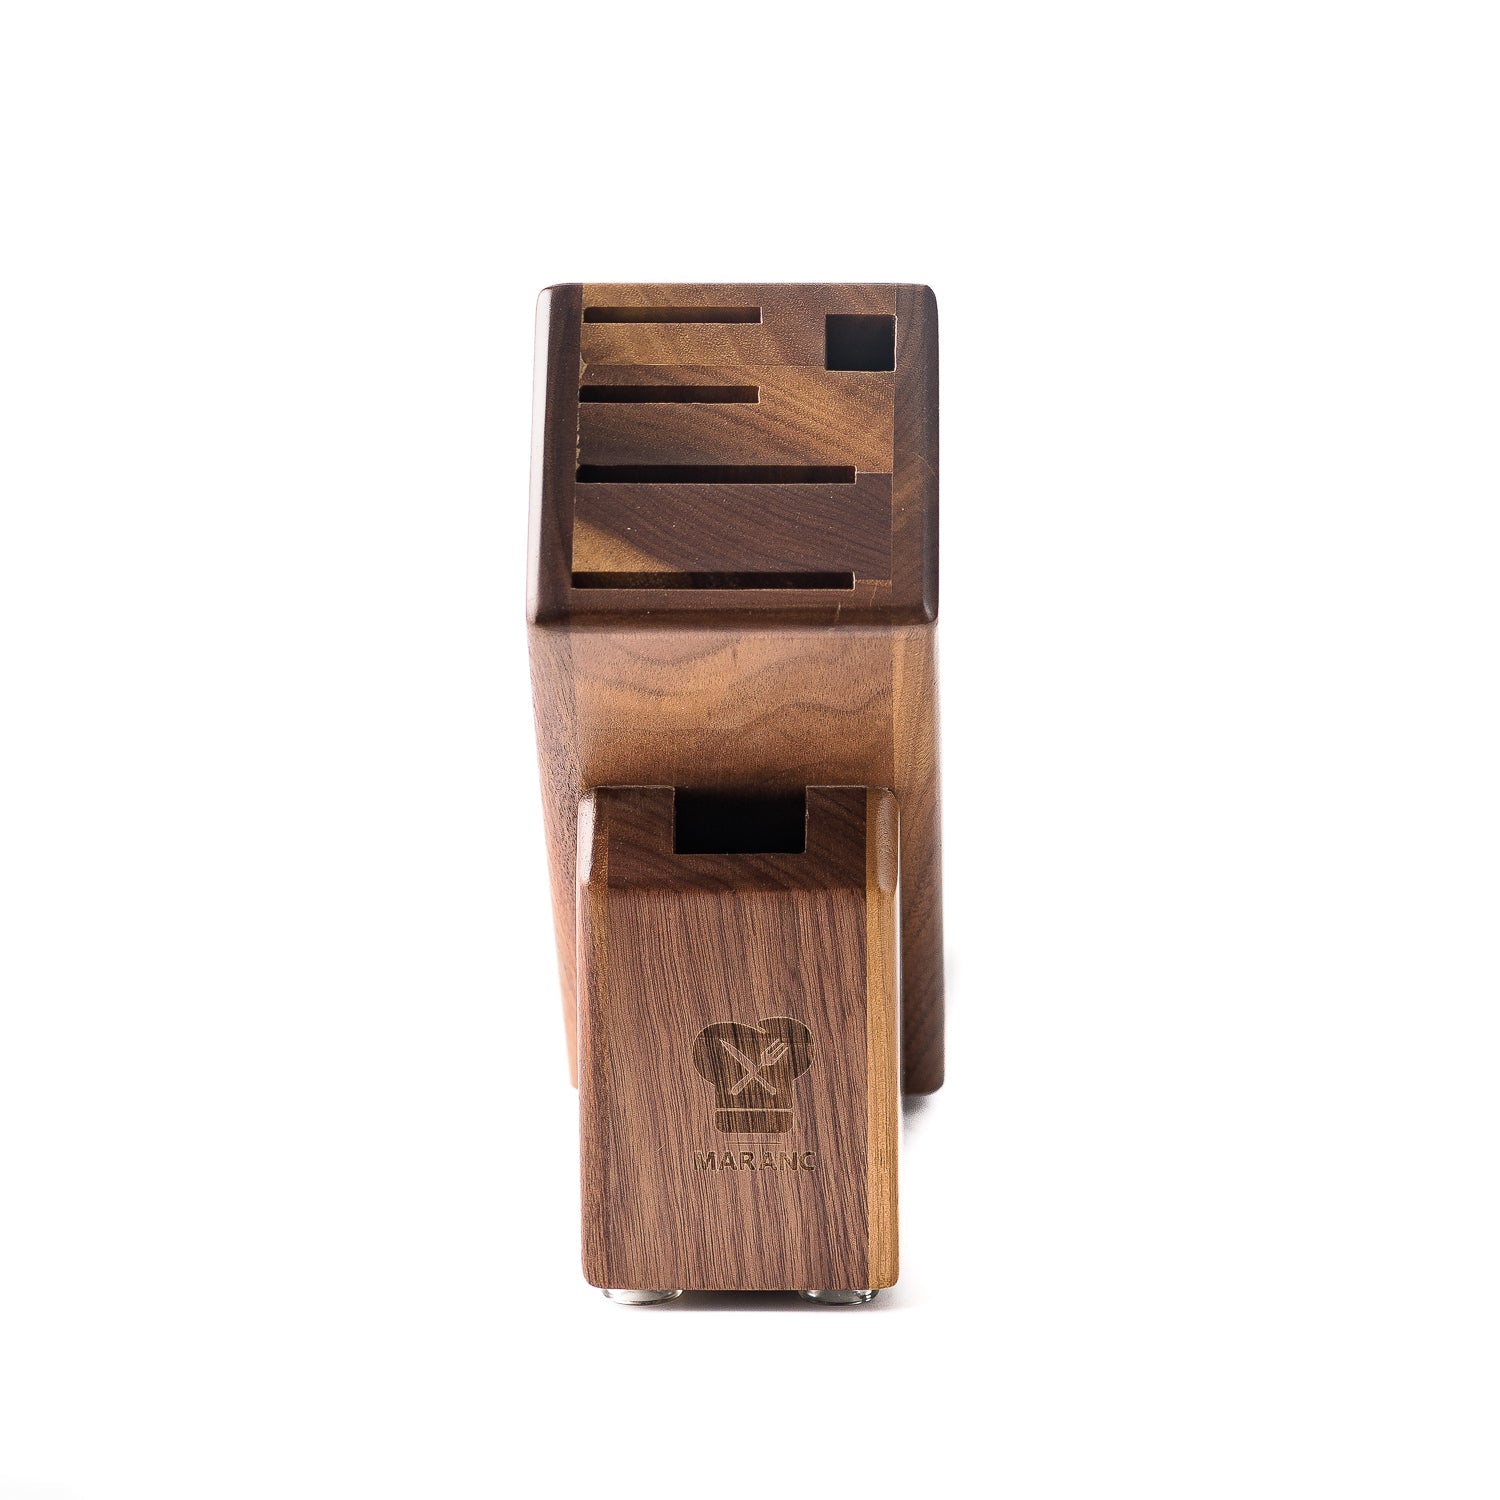 Suport cutite Maranc din lemn pentru 4 cutite M199 -